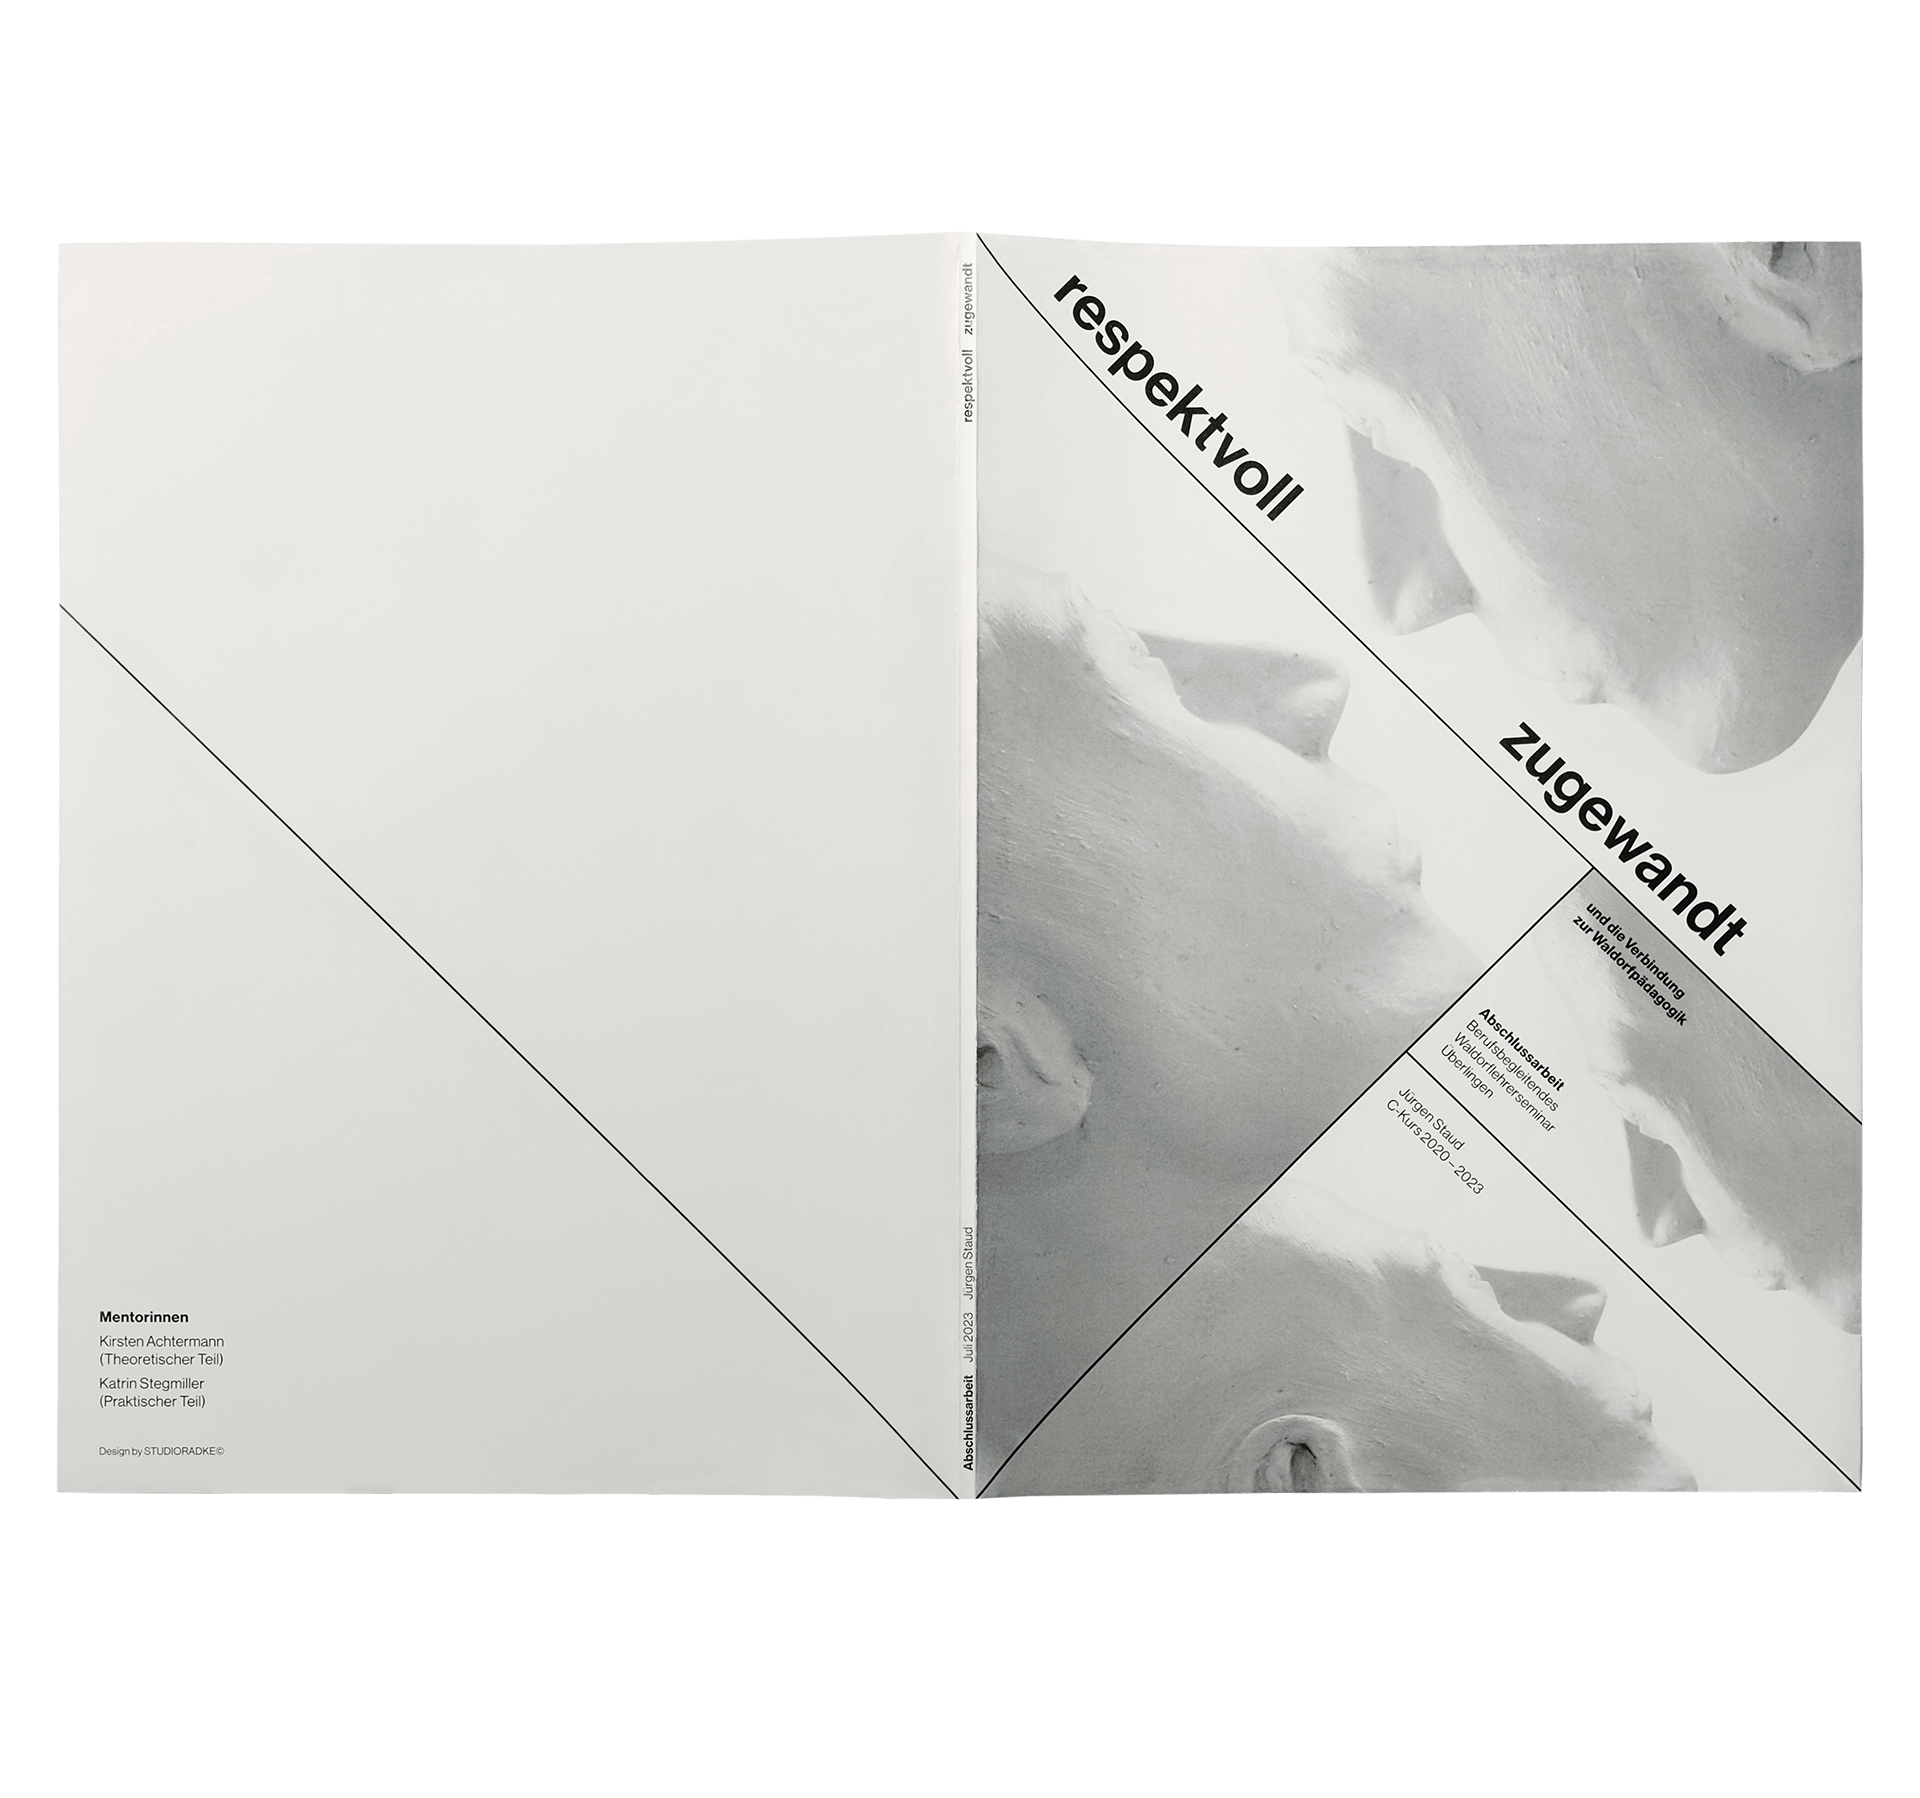 Schutzumschlag und Hardcover eines Buches im Swiss-Style-Design für eine Abschlussarbeit